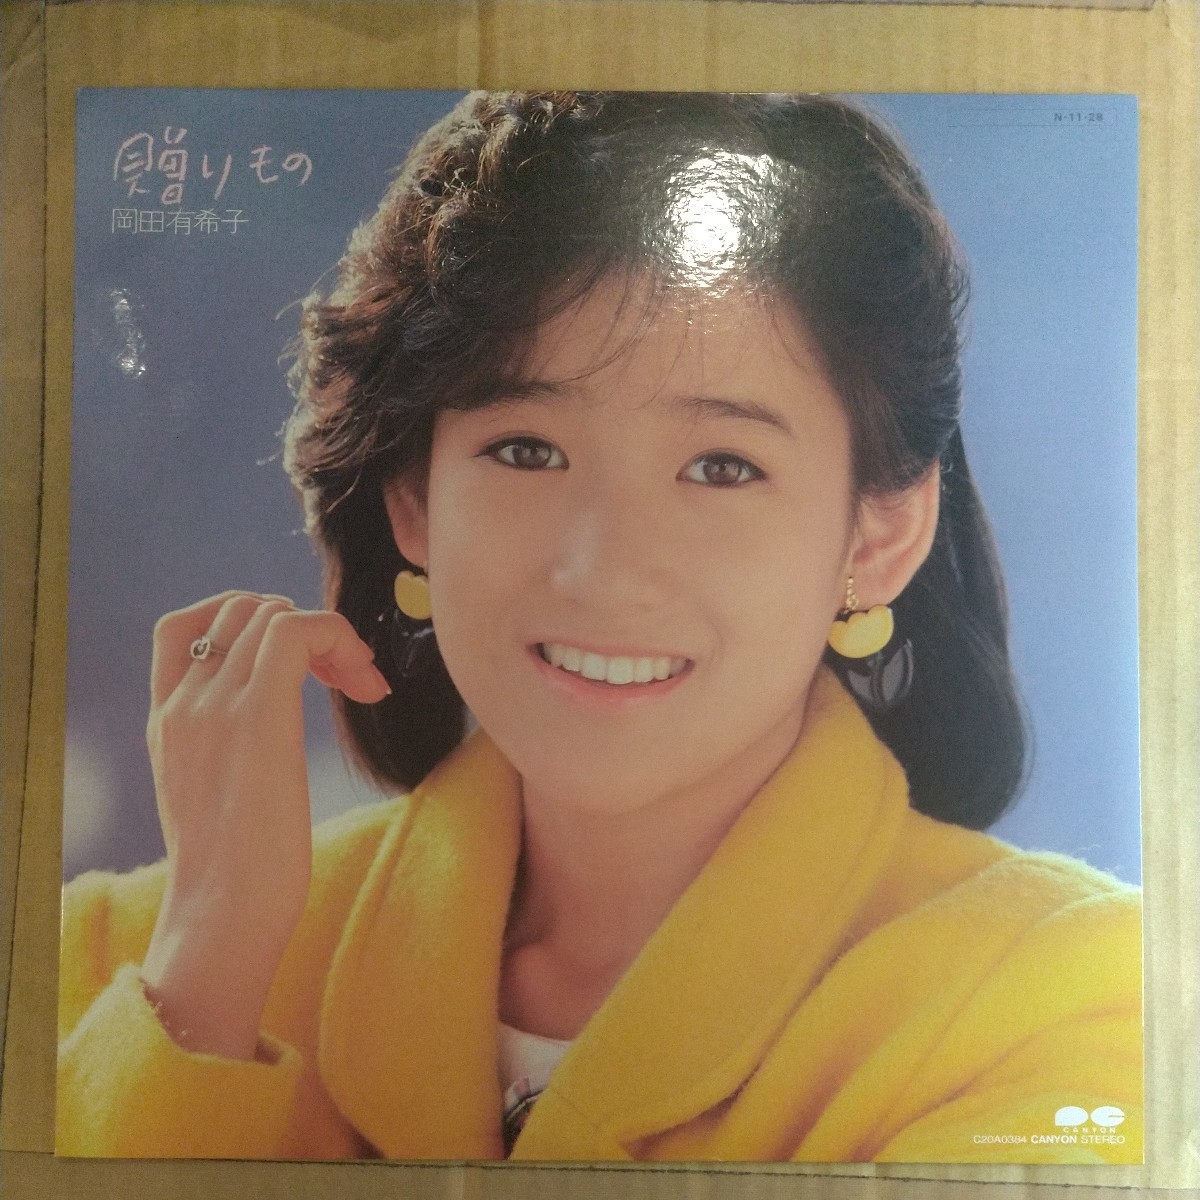 岡田有希子「贈りもの」LP 1984年 best album★★アイドル 和モノシティポップユッコ_画像1